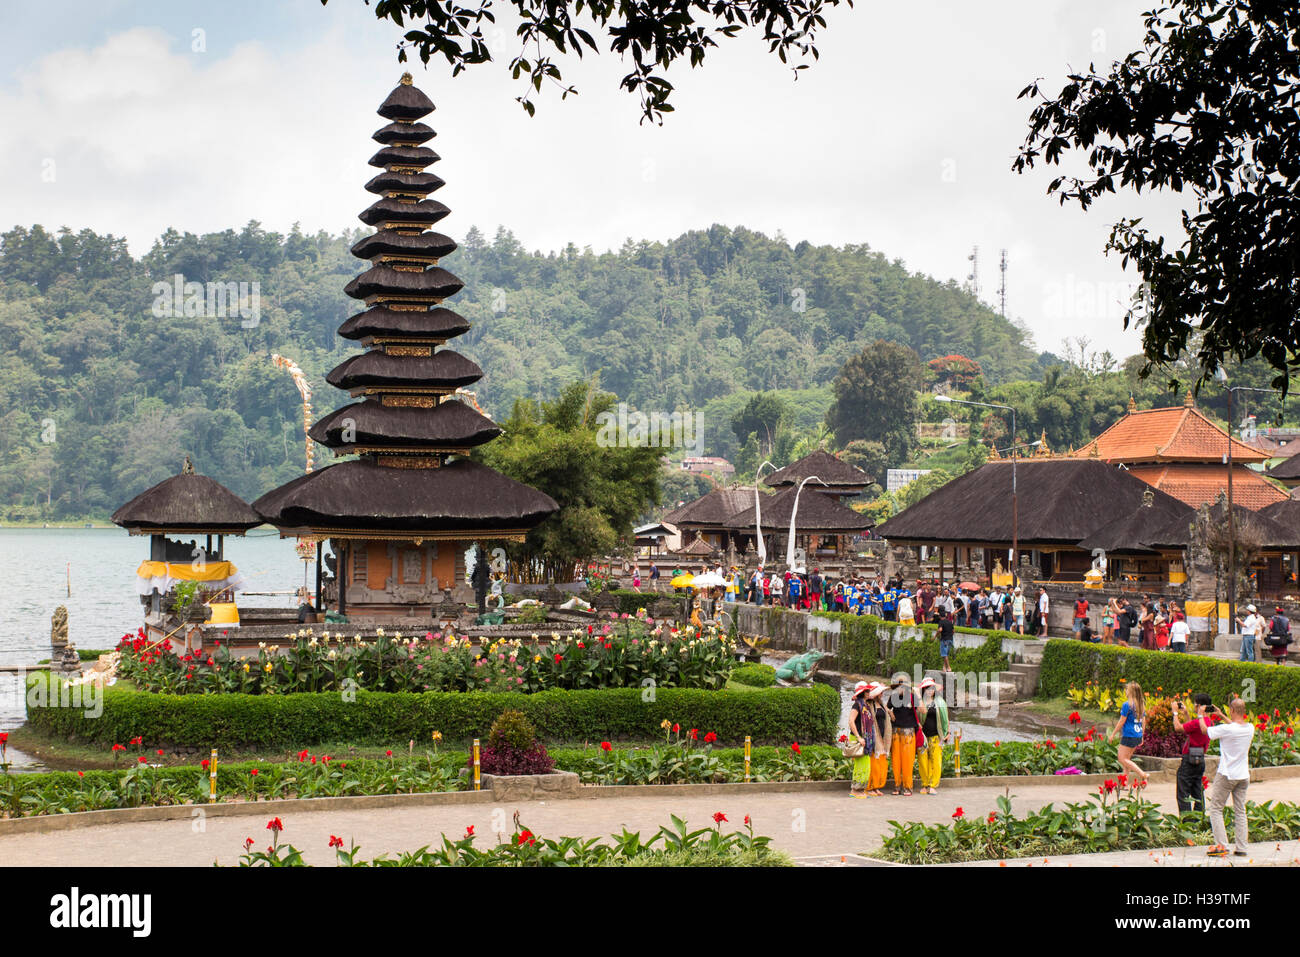 Indonesien, Bali, Candikuning, Puru Ulun Danu Bratan Tempel neben See, Massen von Touristen Stockfoto